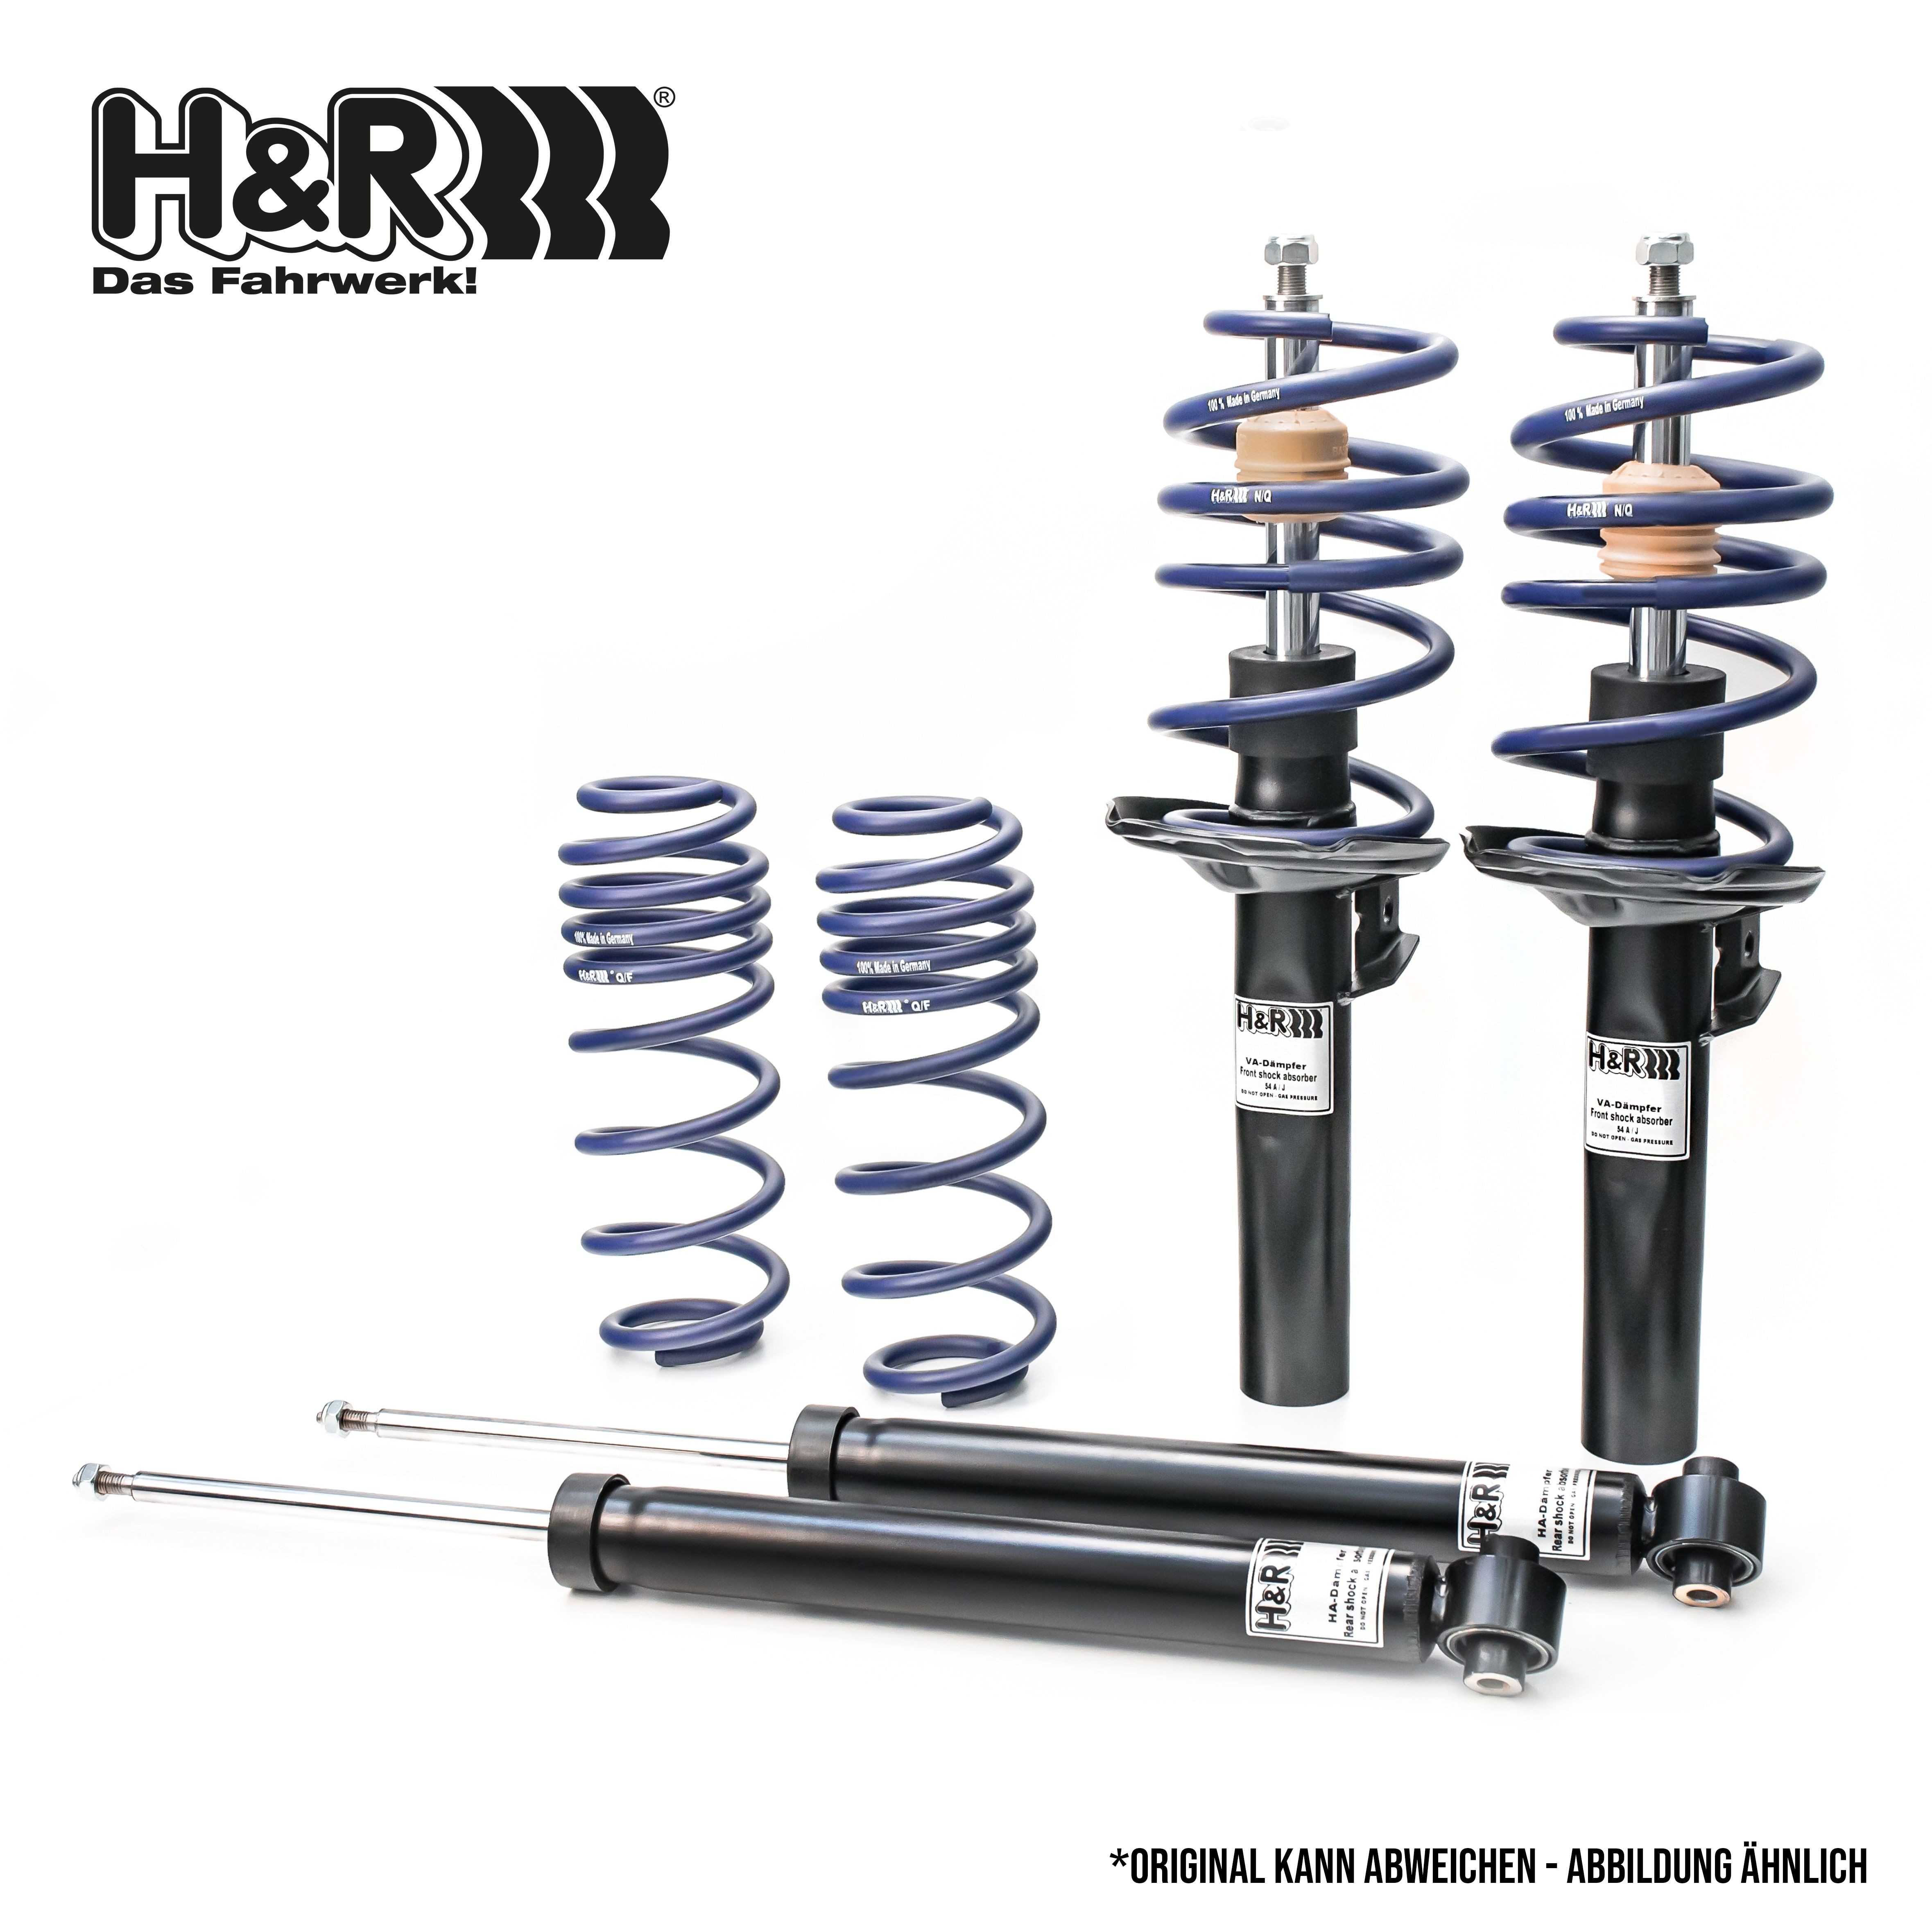 H&R Shock absorber set 40527-1 buy